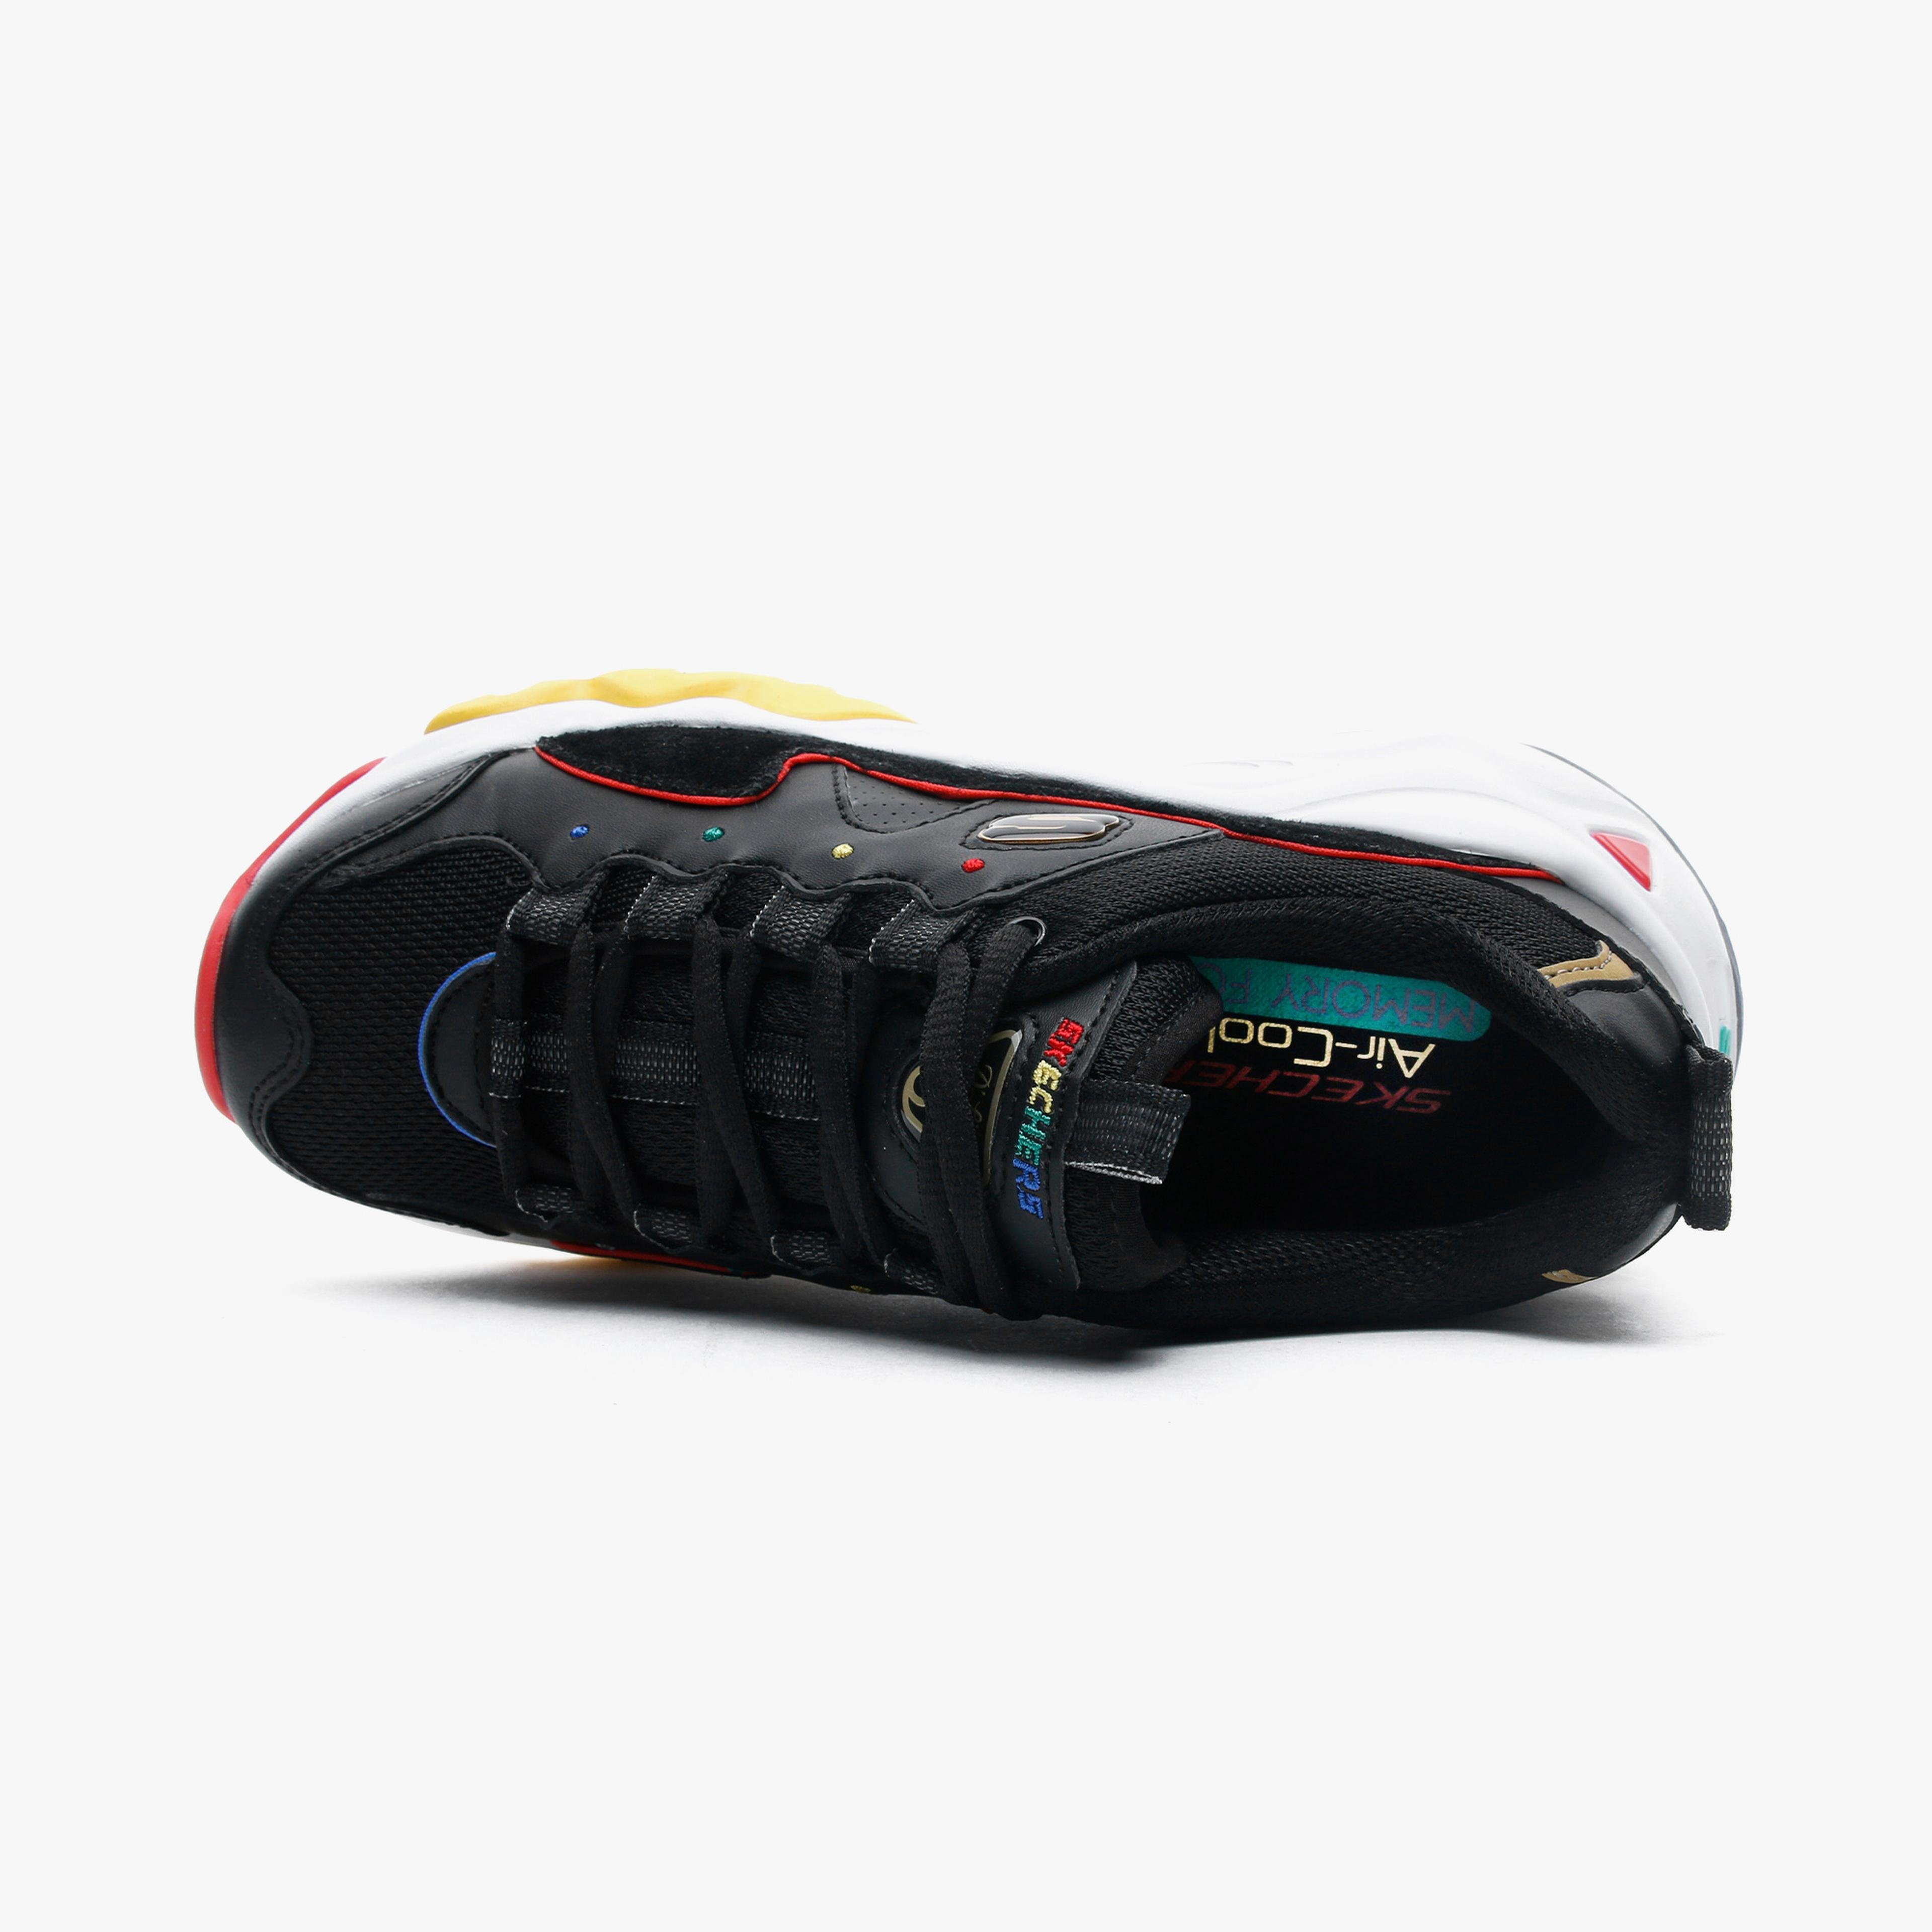 Skechers D'Lites 3.0 - Menlo Park Kadın Siyah Spor Ayakkabı